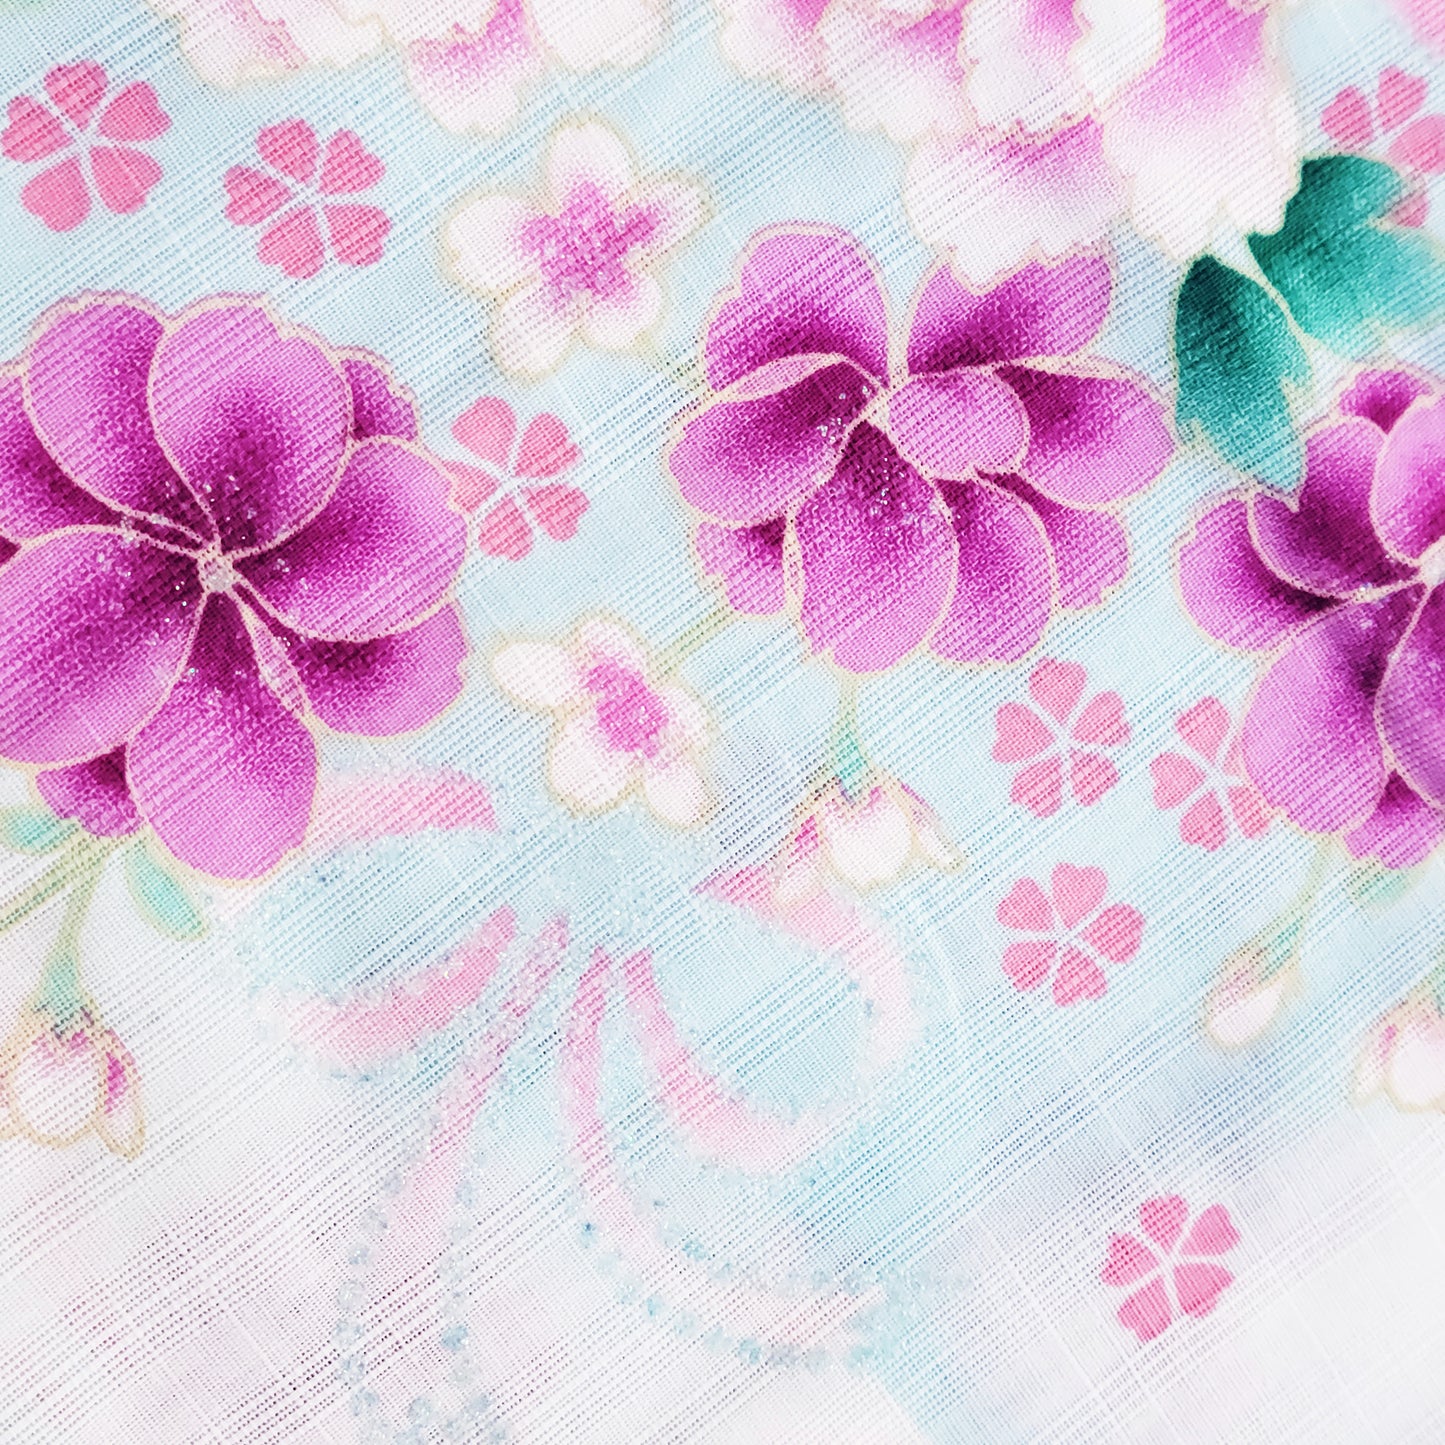 Women's Japanese Yukata Kimono - Pink Peonies and Purple Cherry Blossoms in White